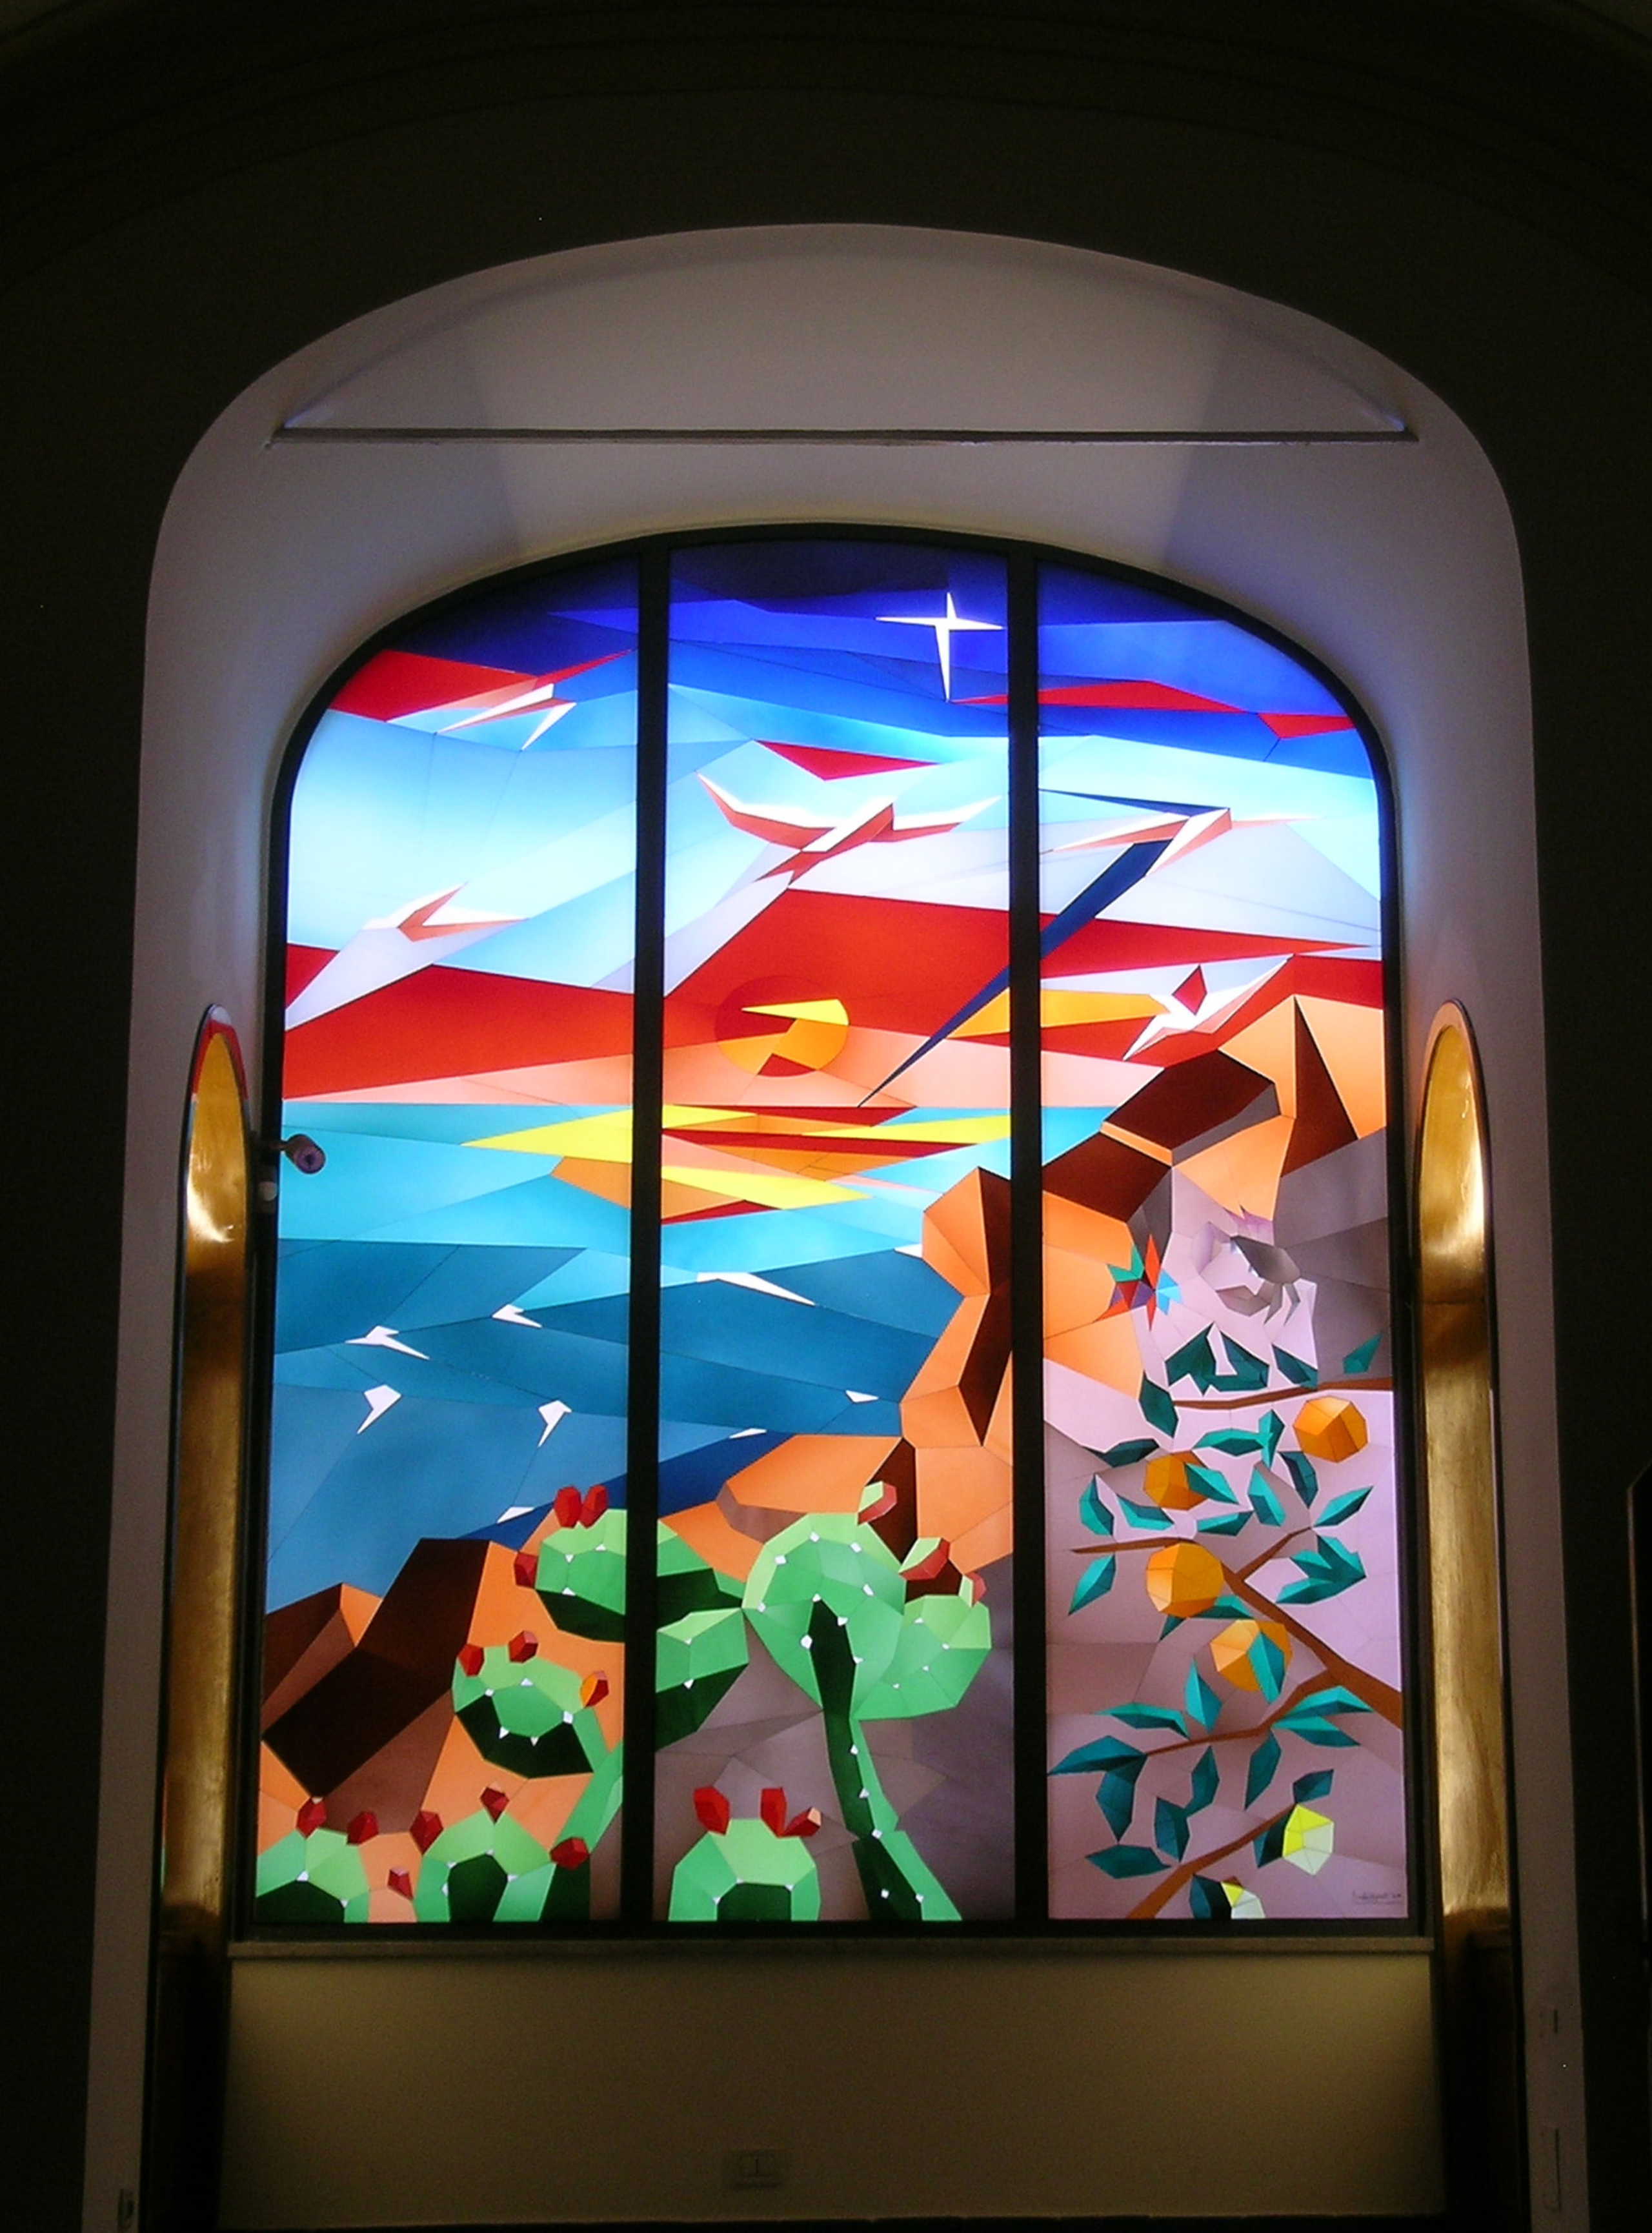 Farbenfrohes Buntglasfenster mit abstraktem Design in einer bogenförmigen Rahmenstruktur, beleuchtet von hinten.